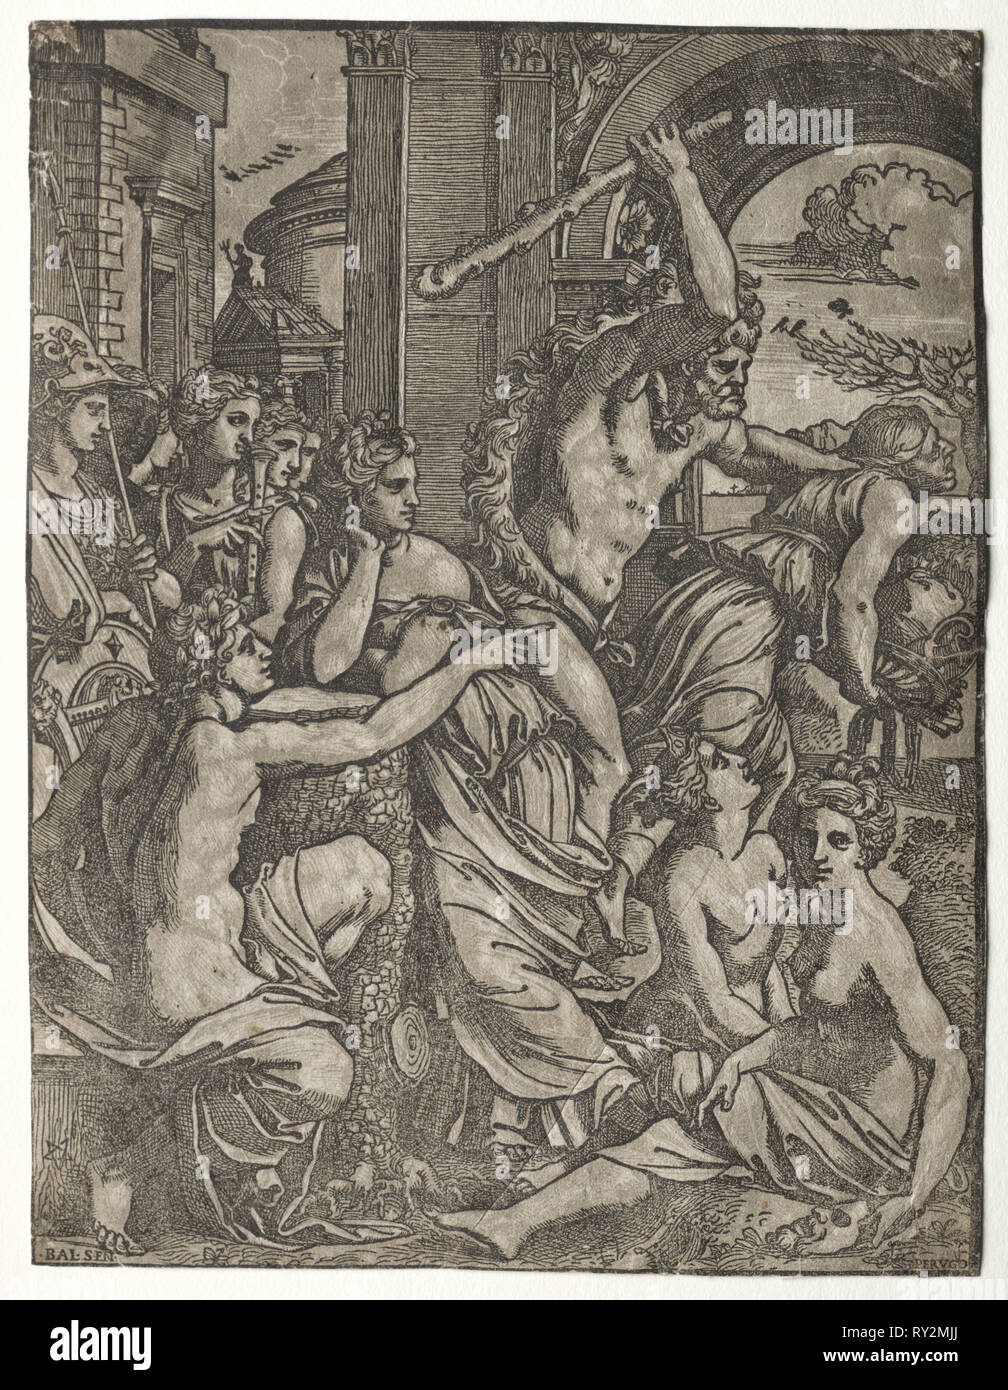 Hercules invidia di guida dal Tempio delle muse, 1522-24. Ugo da Carpi (Italiano, c. 1479-c. 1532), dopo Balthasar Peruzzi (Italiano, 1481-1536). Incisione a legno in chiaroscuro (in bianco e nero e grigio); foglio: 29,5 x 22,5 cm (11 5/8 x 8 7/8 in Foto Stock